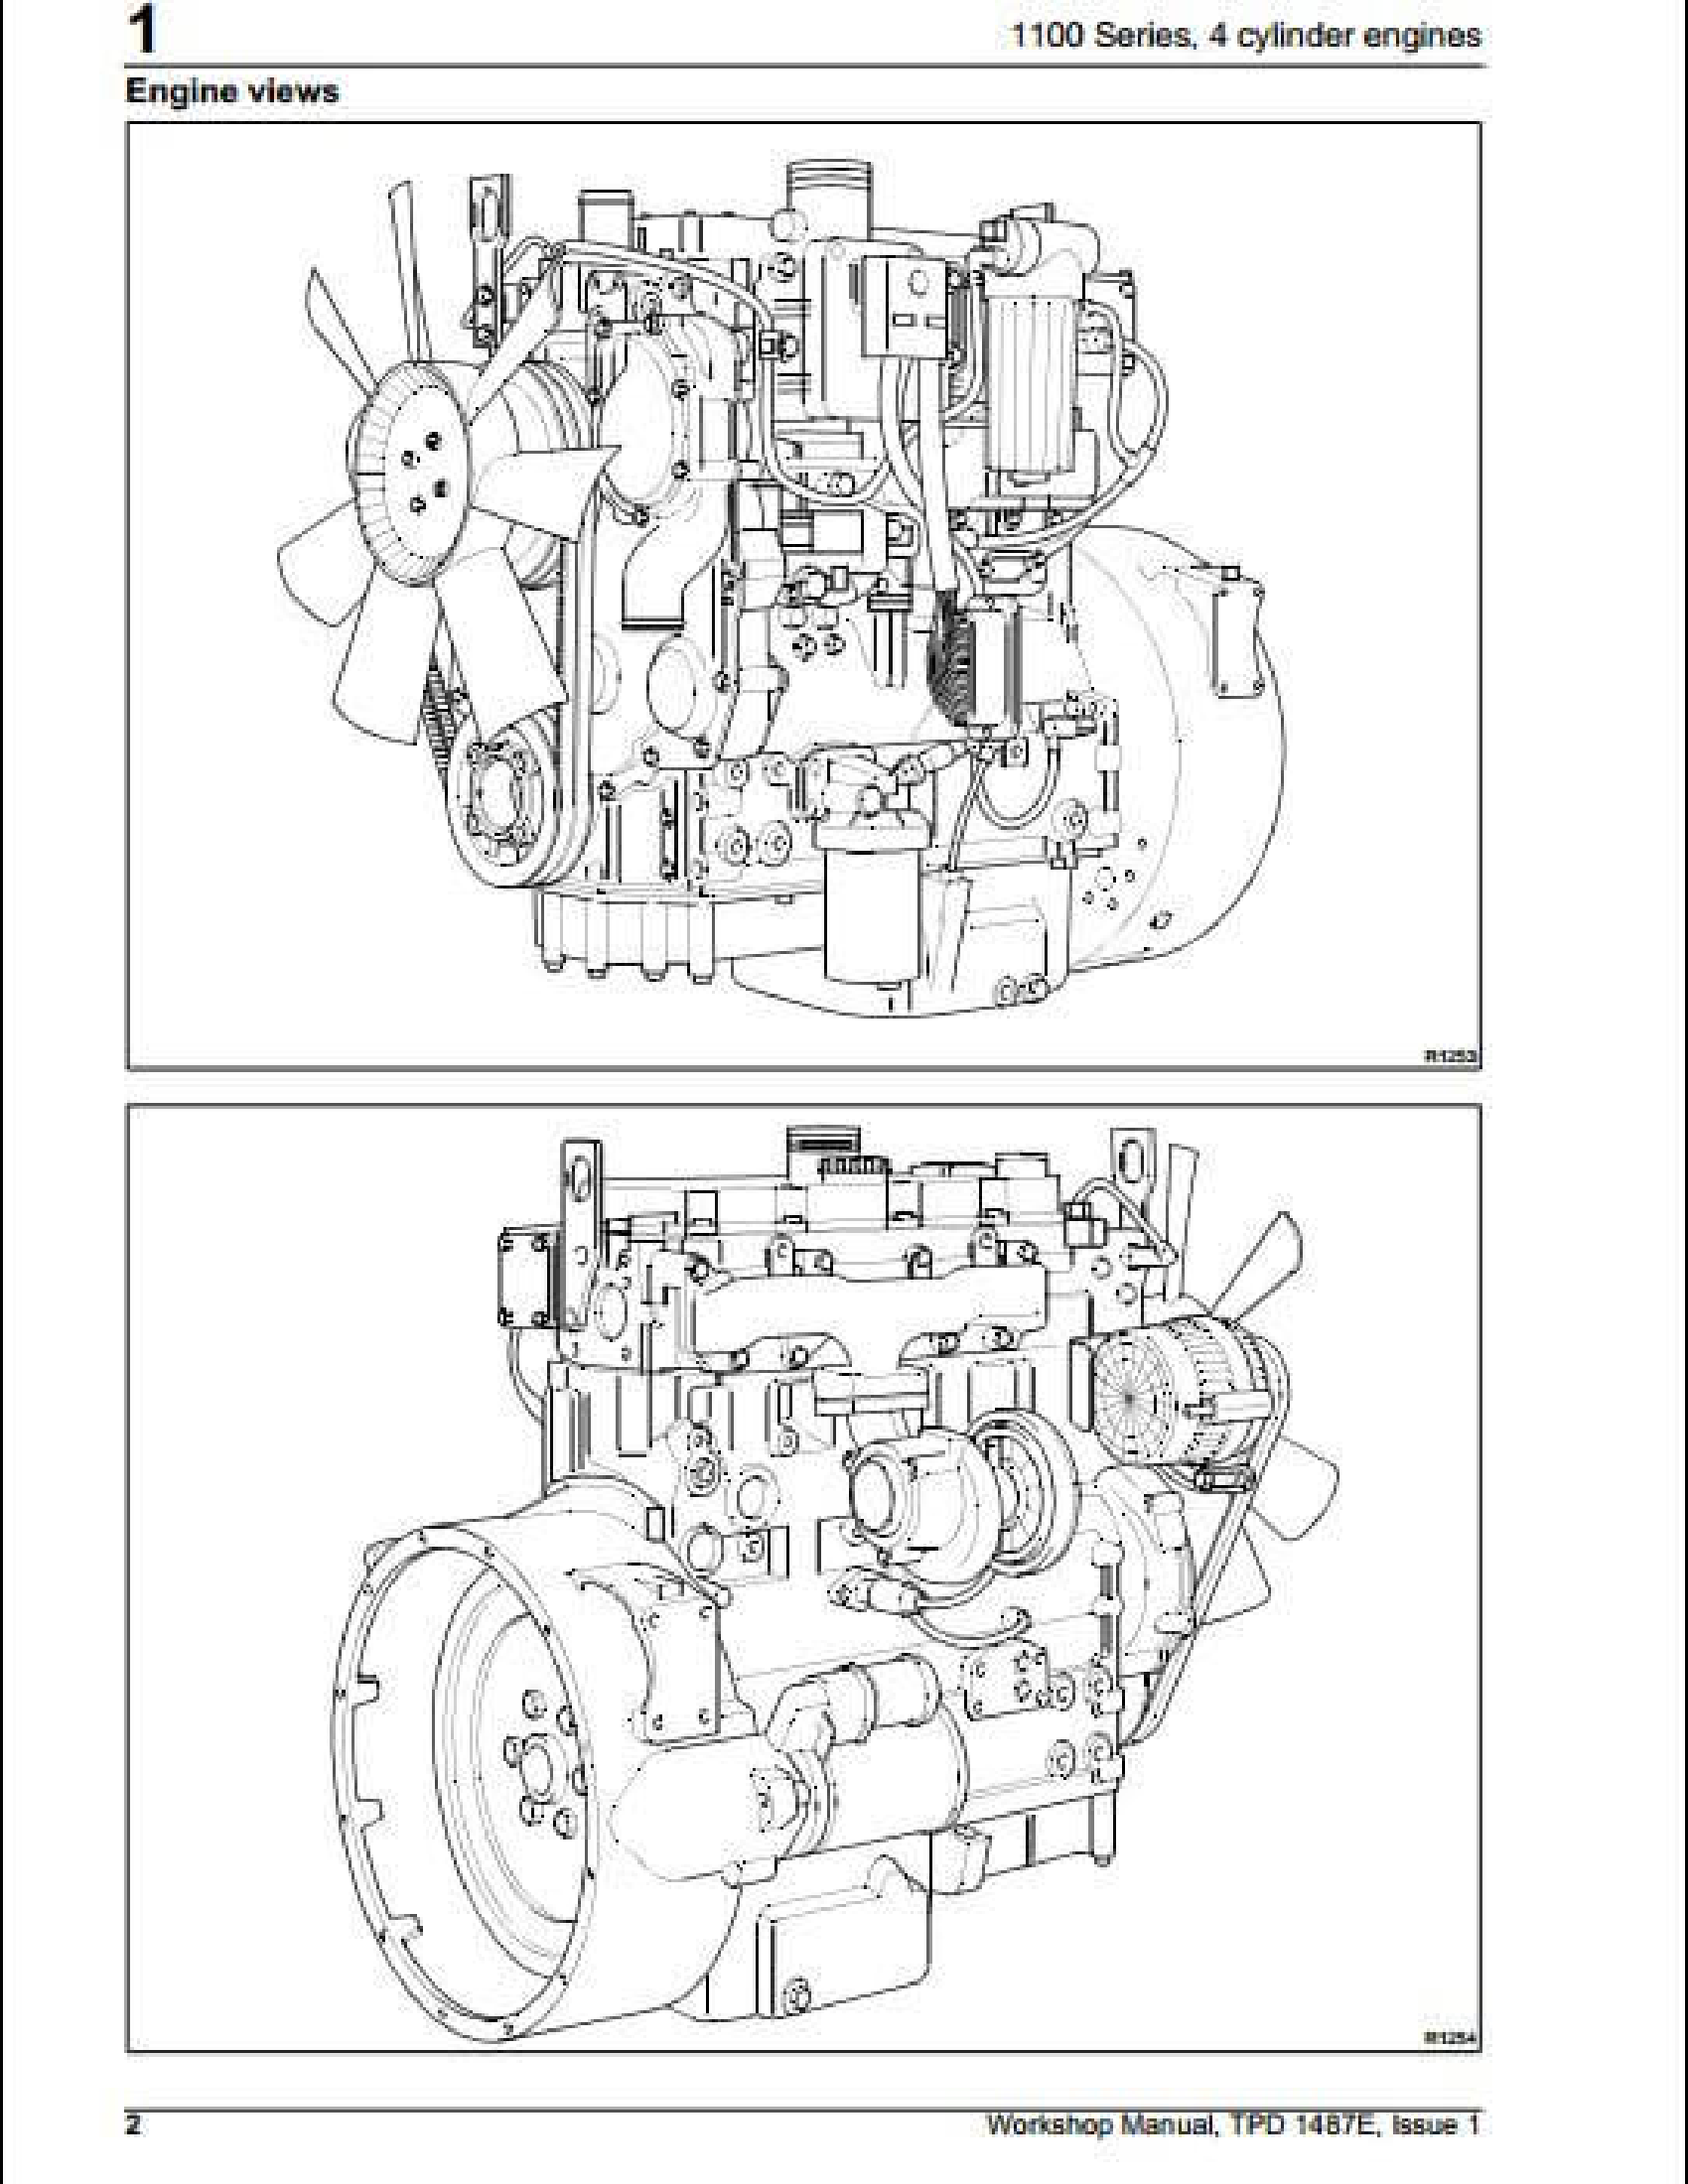 Perkins 1100 Series Engine manual